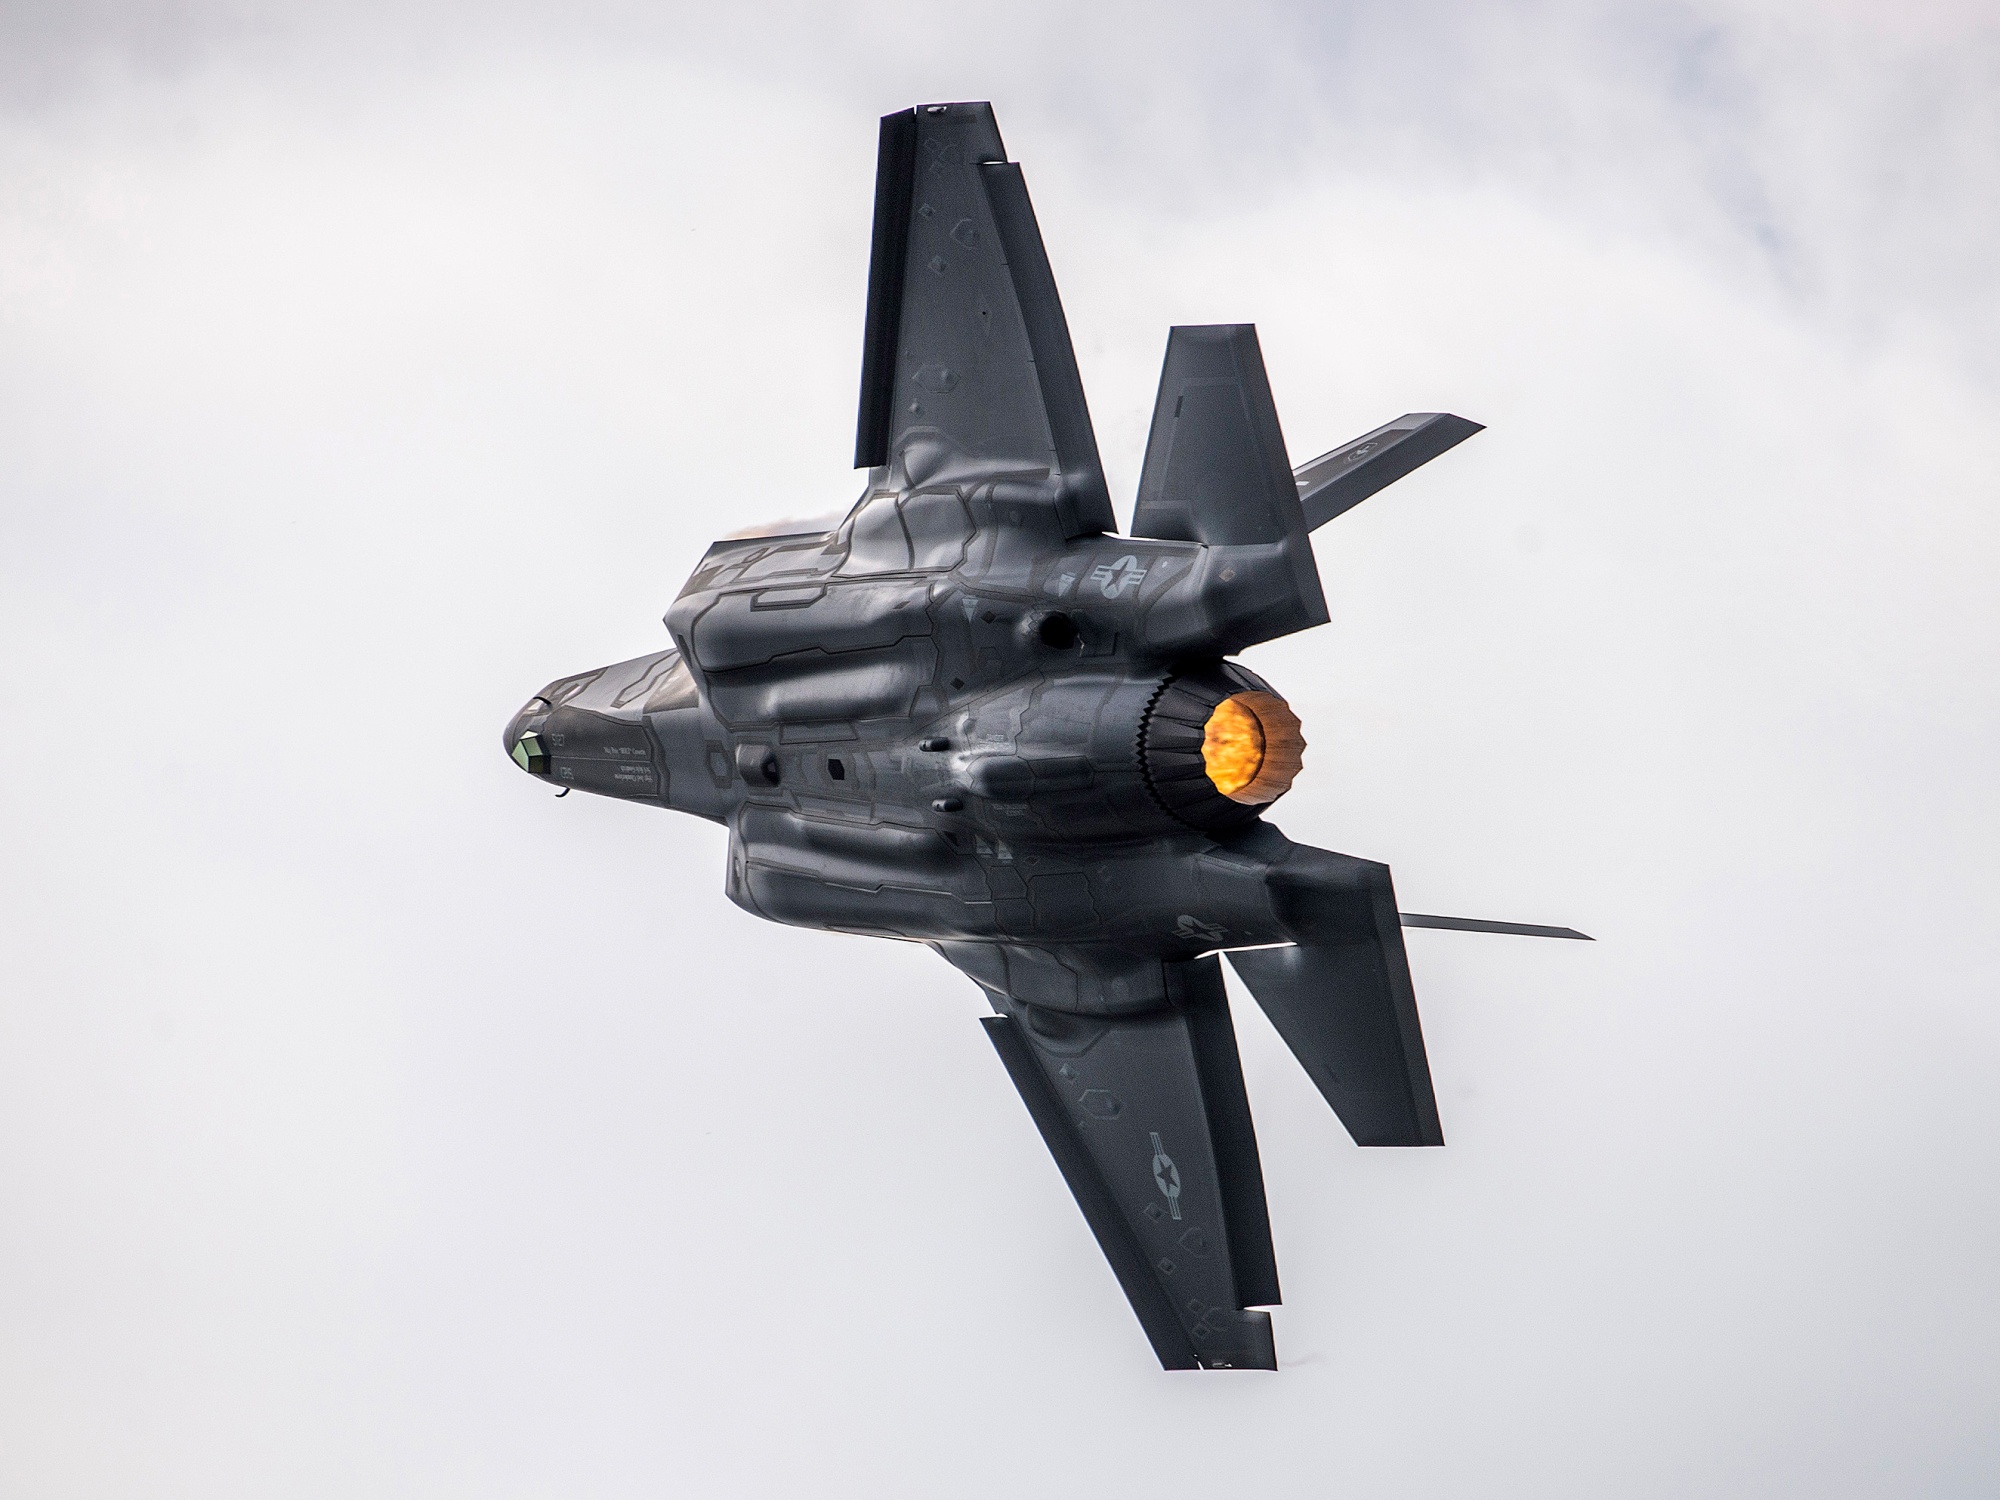 Пентагон хоче отримати модернізовані двигуни Pratt & Whitney F135 для винищувачів п'ятого покоління F-35 Lightning II до 2030 року